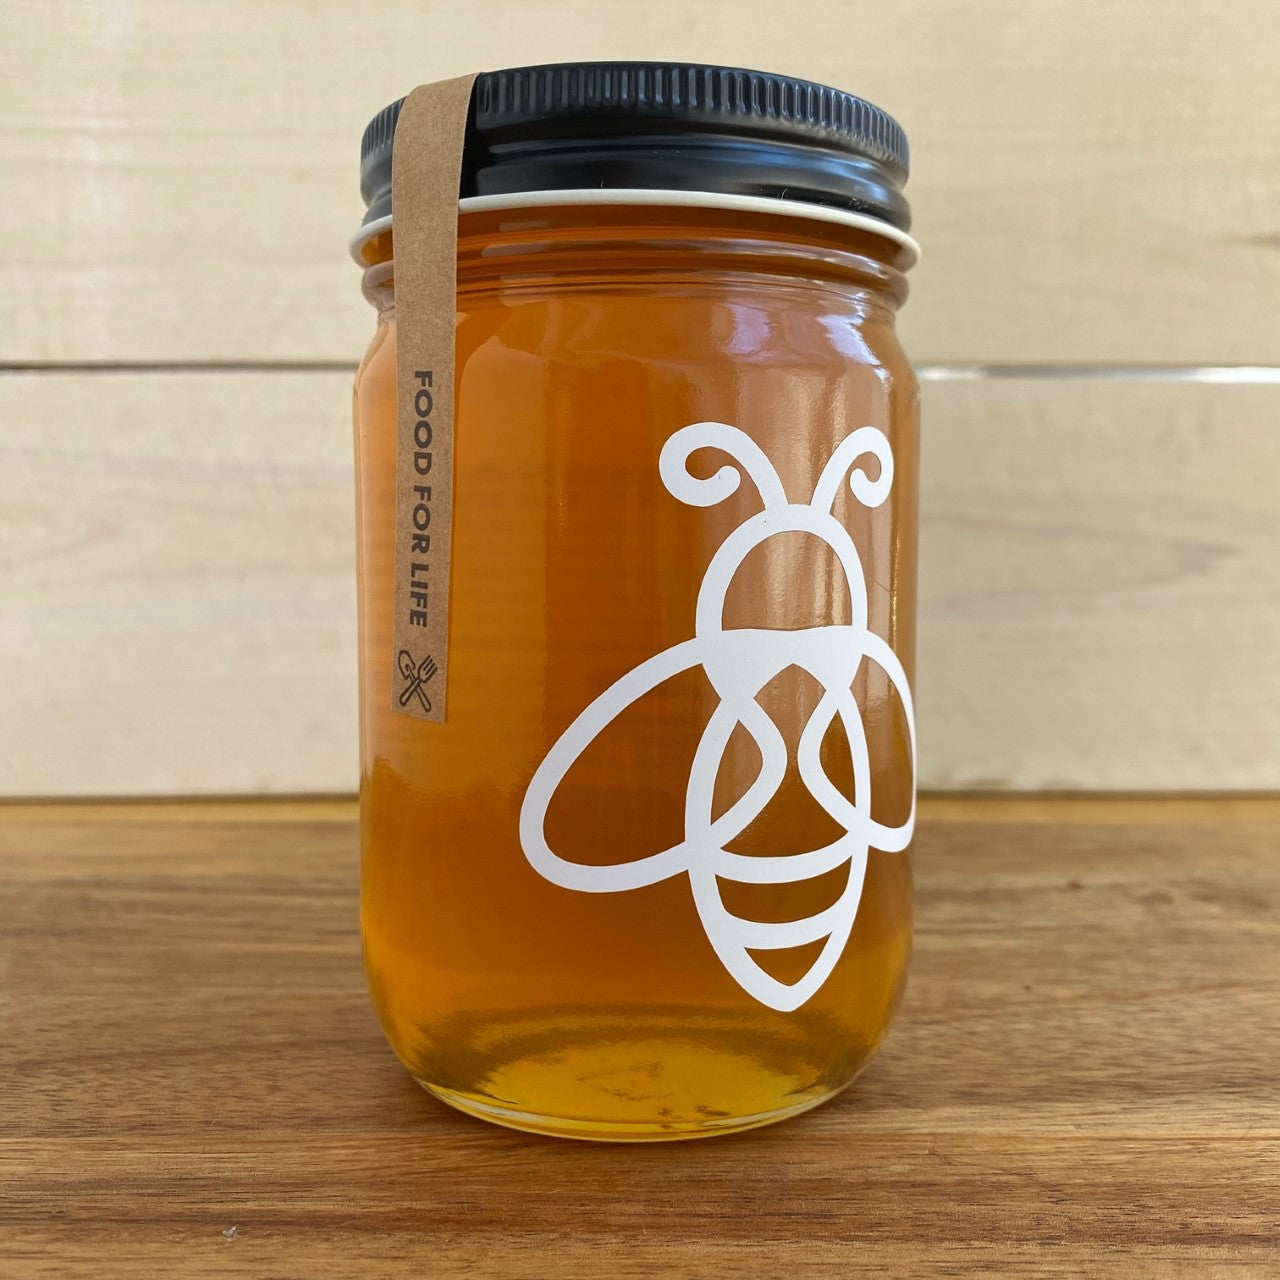 Premium 100% raw honey from Kentucky